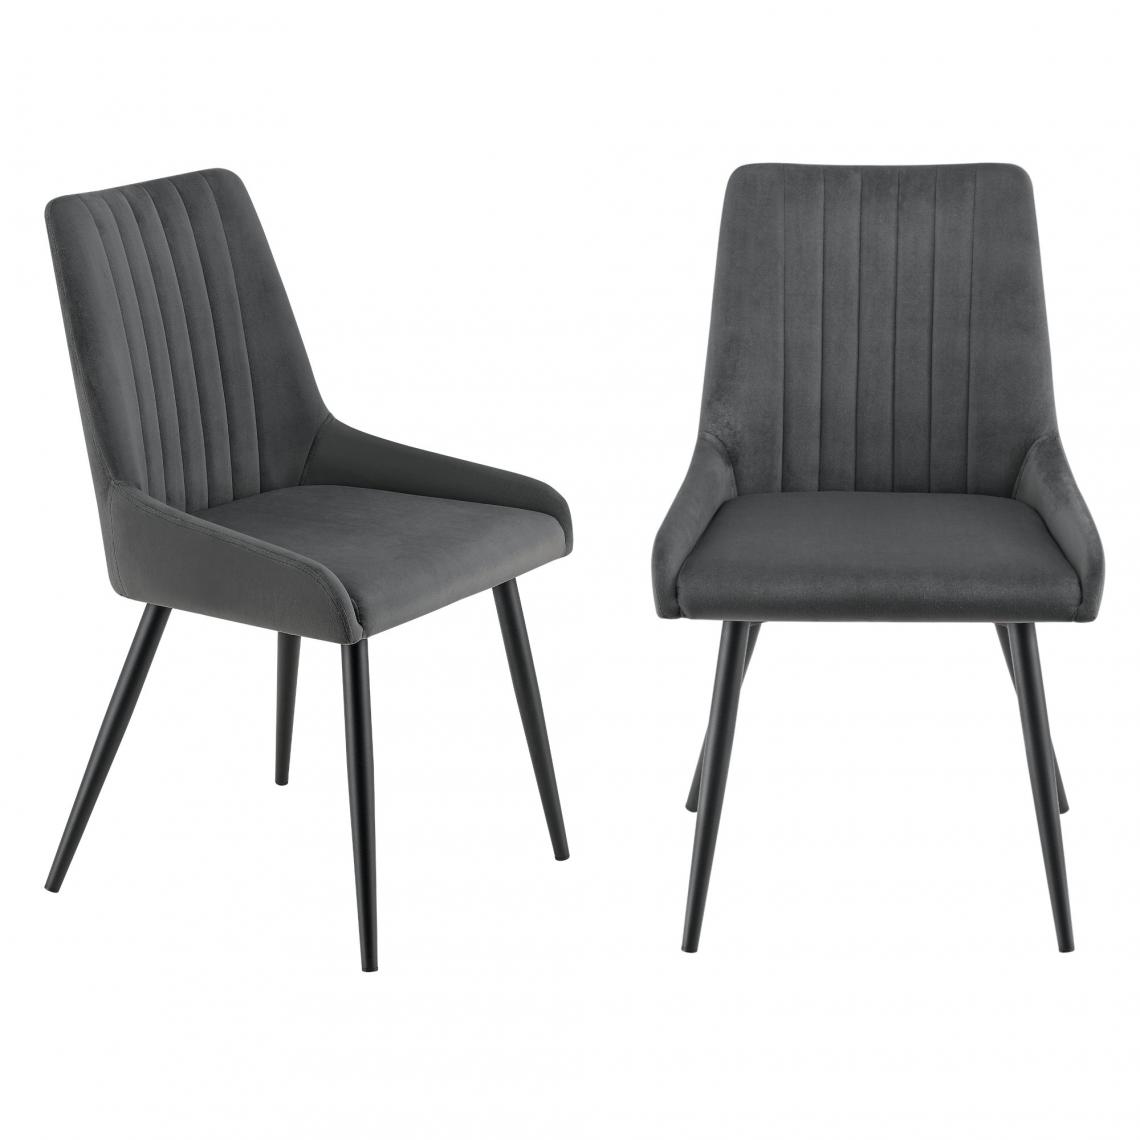 Helloshop26 - Lot de 2 chaises sièges salle à manger pieds robustes acier velours gris foncé noir 03_0005749 - Chaises